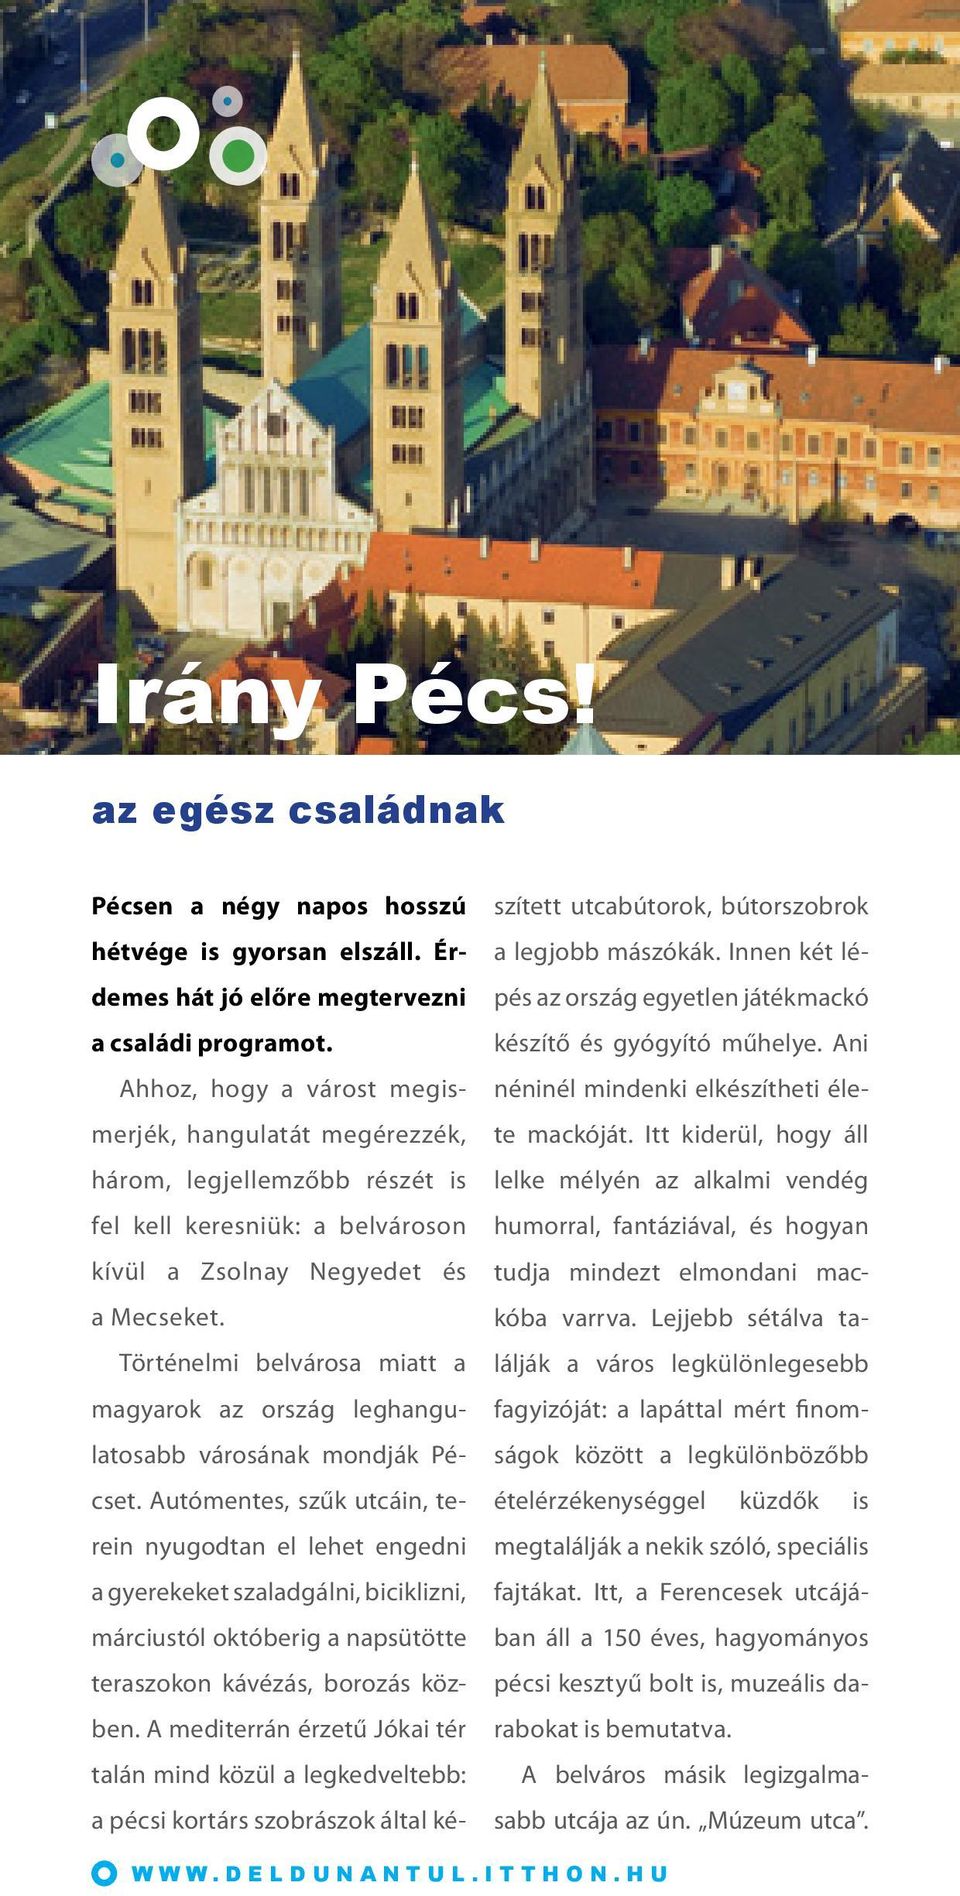 Történelmi belvárosa miatt a ma gyarok az ország leghangula to sabb városának mondják Pécset.